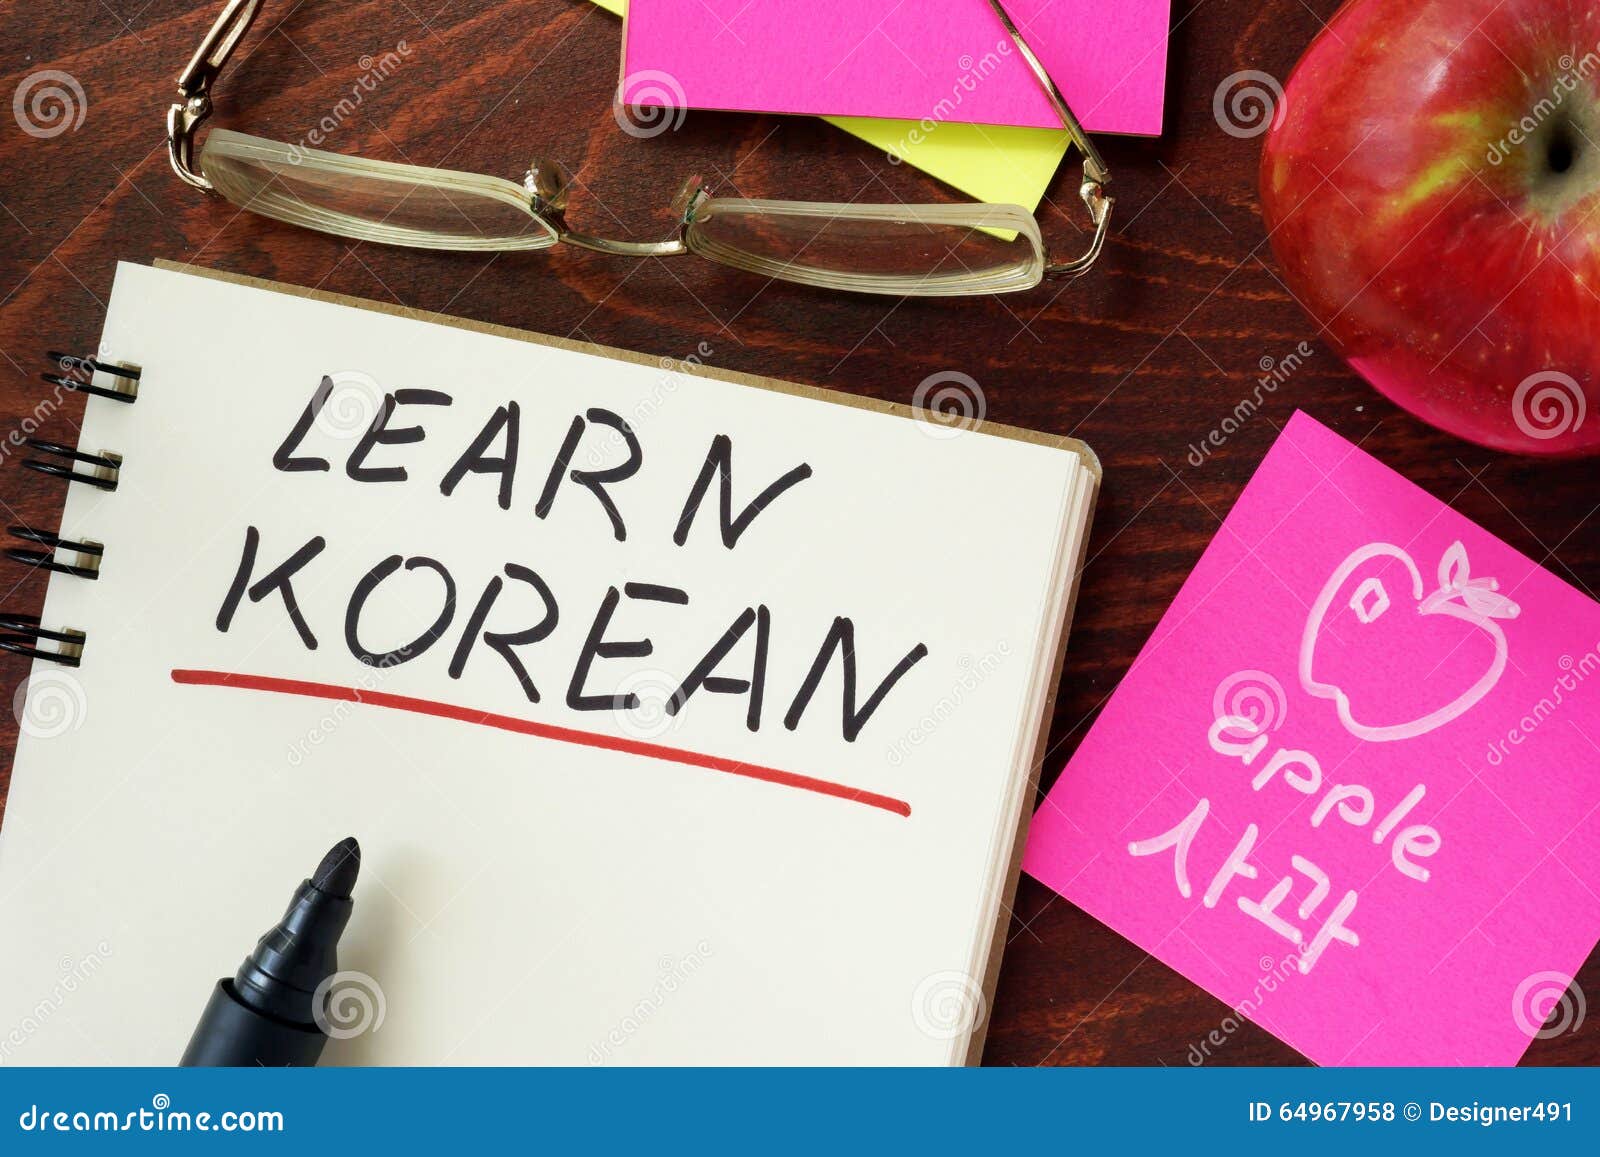 words learn korean written in the notepad.